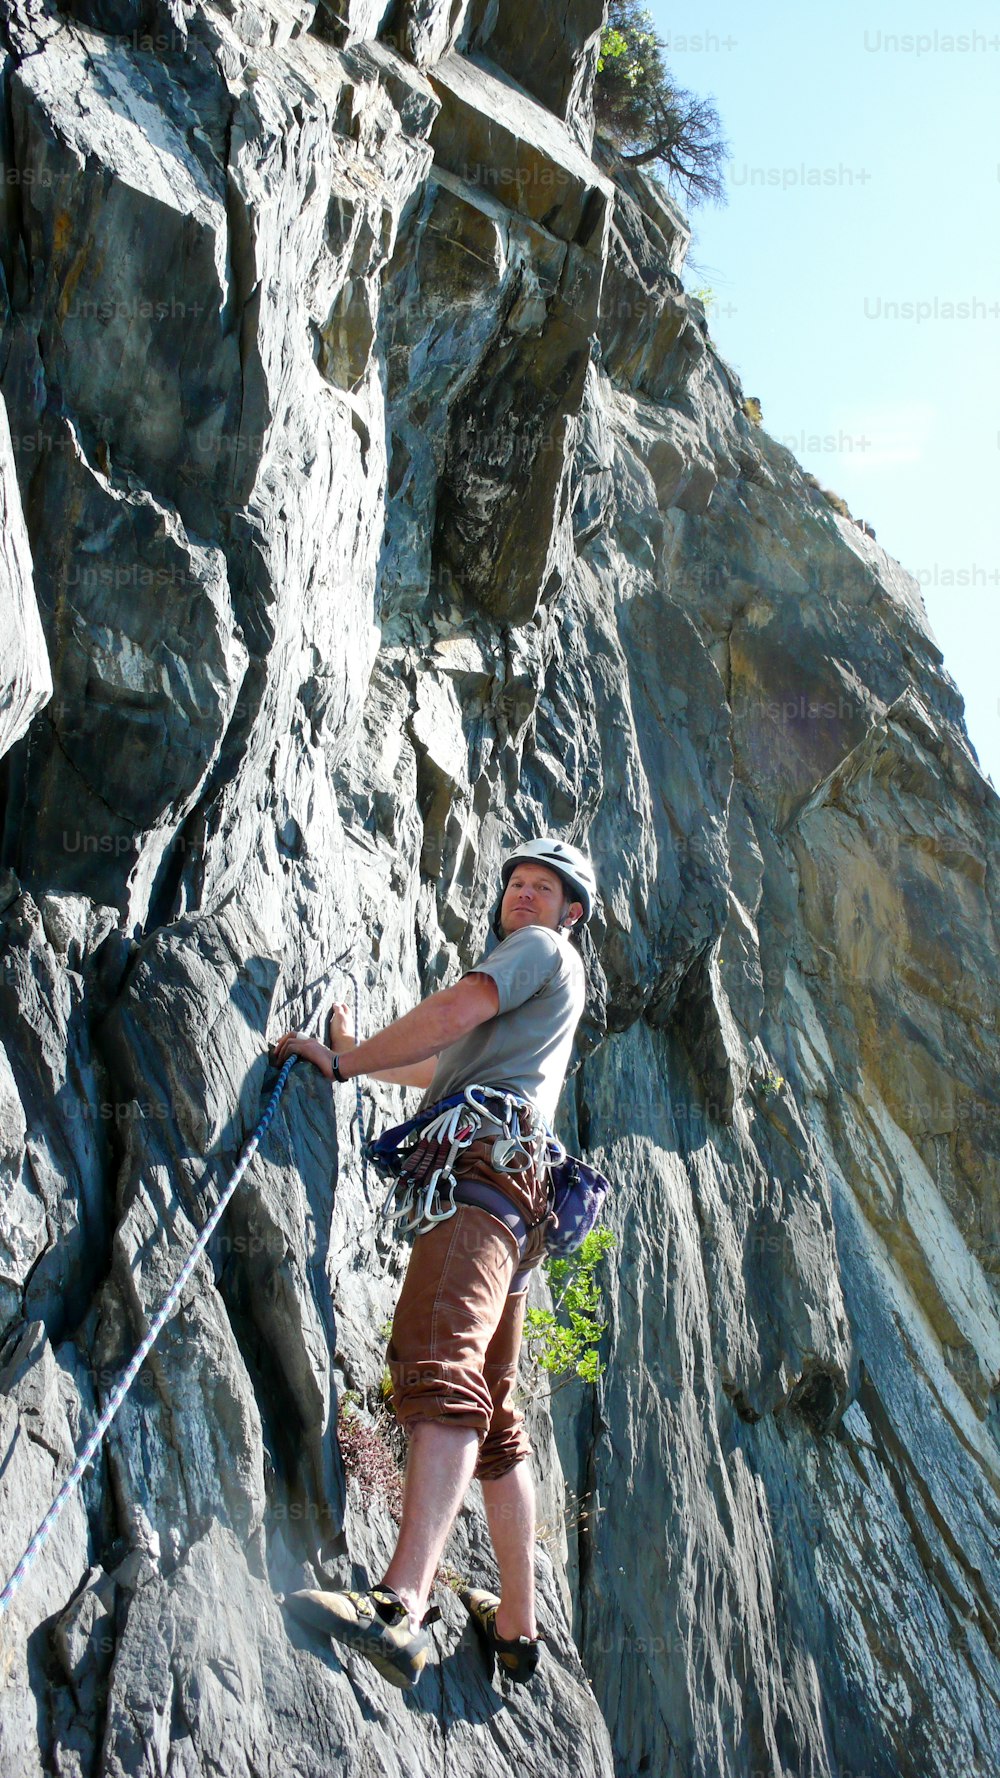 Um alpinista guia de montanha em uma rota de escalada de calcário de laje nos Alpes da Suíça em um belo dia